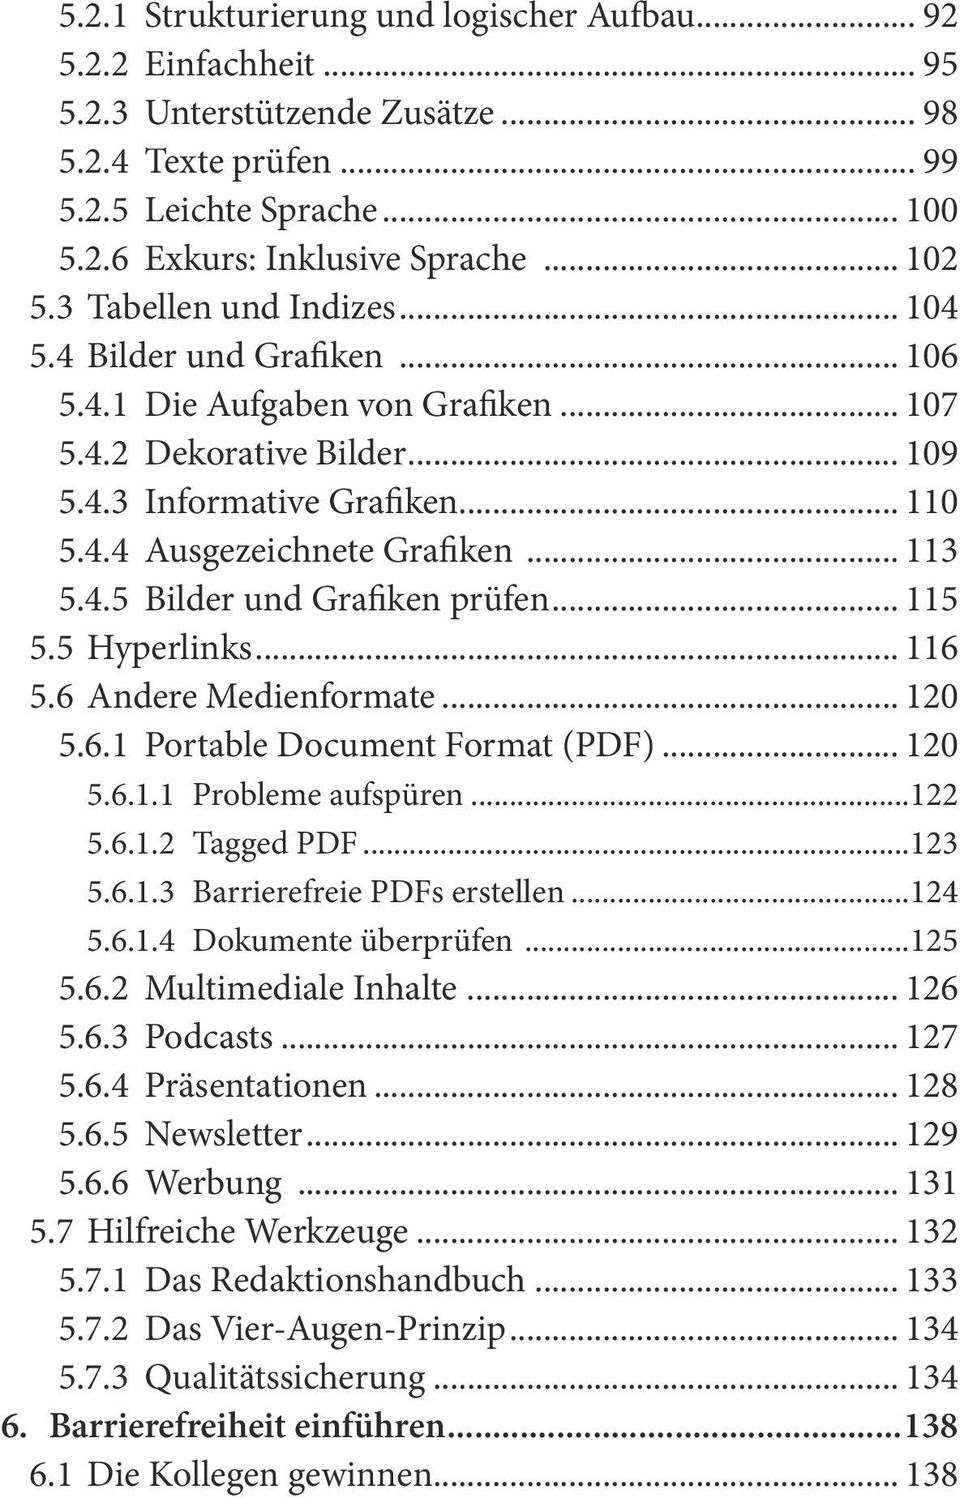 .. 113 5.4.5 Bilder und Grafiken prüfen... 115 5.5 Hyperlinks... 116 5.6 Andere Medienformate... 120 5.6.1 Portable Document Format (PDF)... 120 5.6.1.1 Probleme aufspüren...122 5.6.1.2 Tagged PDF.